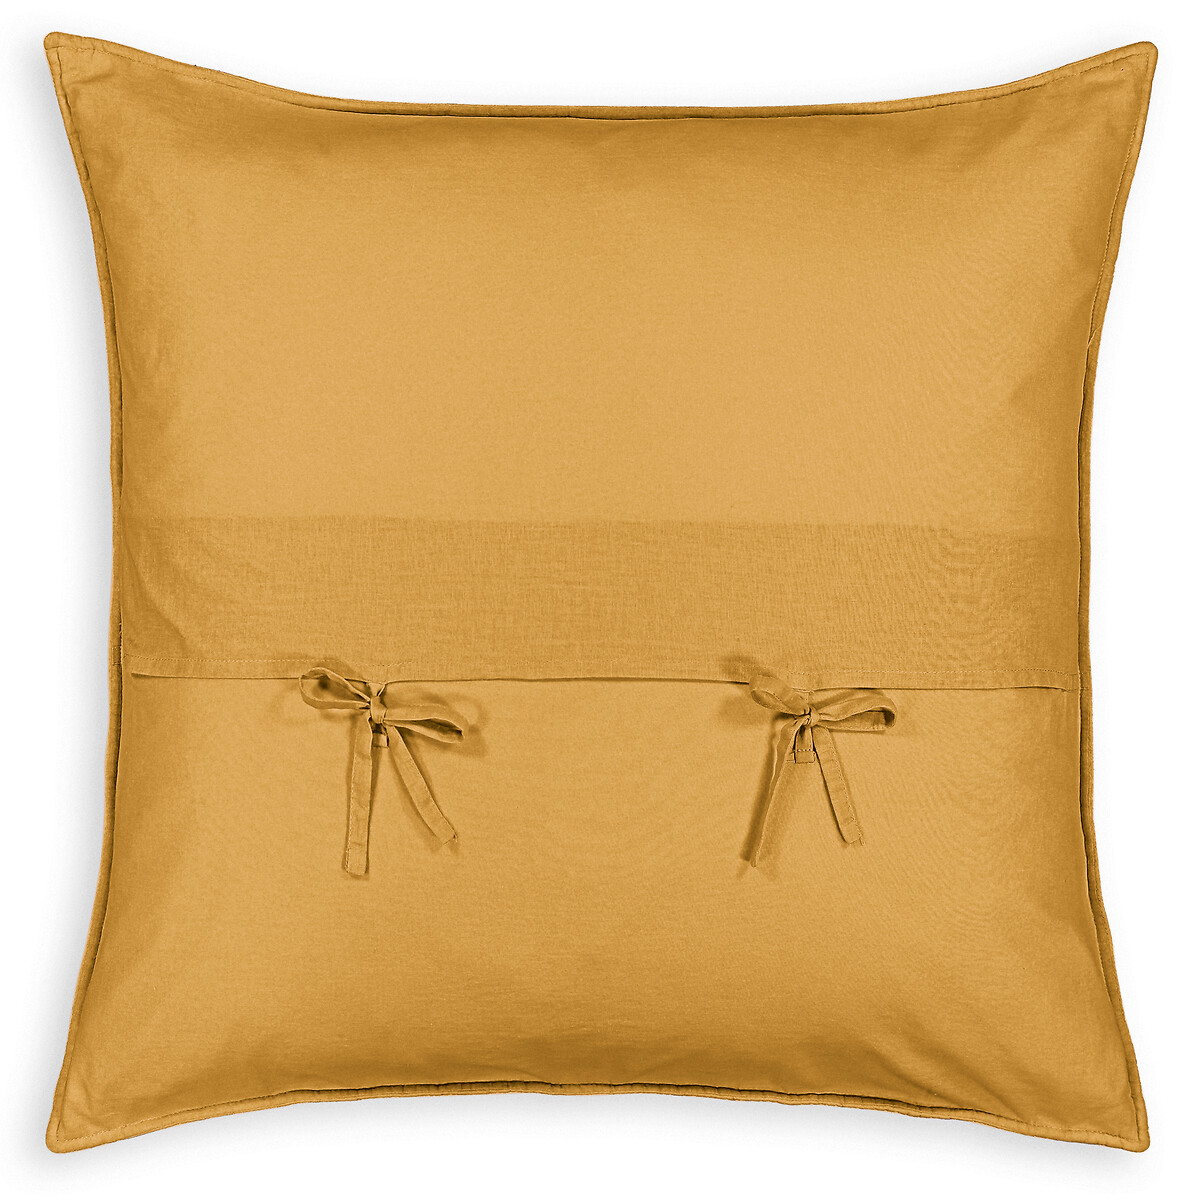 Чехол La Redoute На подушку  наволочка Zig-zag 40 x 40 см желтый, размер 40 x 40 см - фото 4